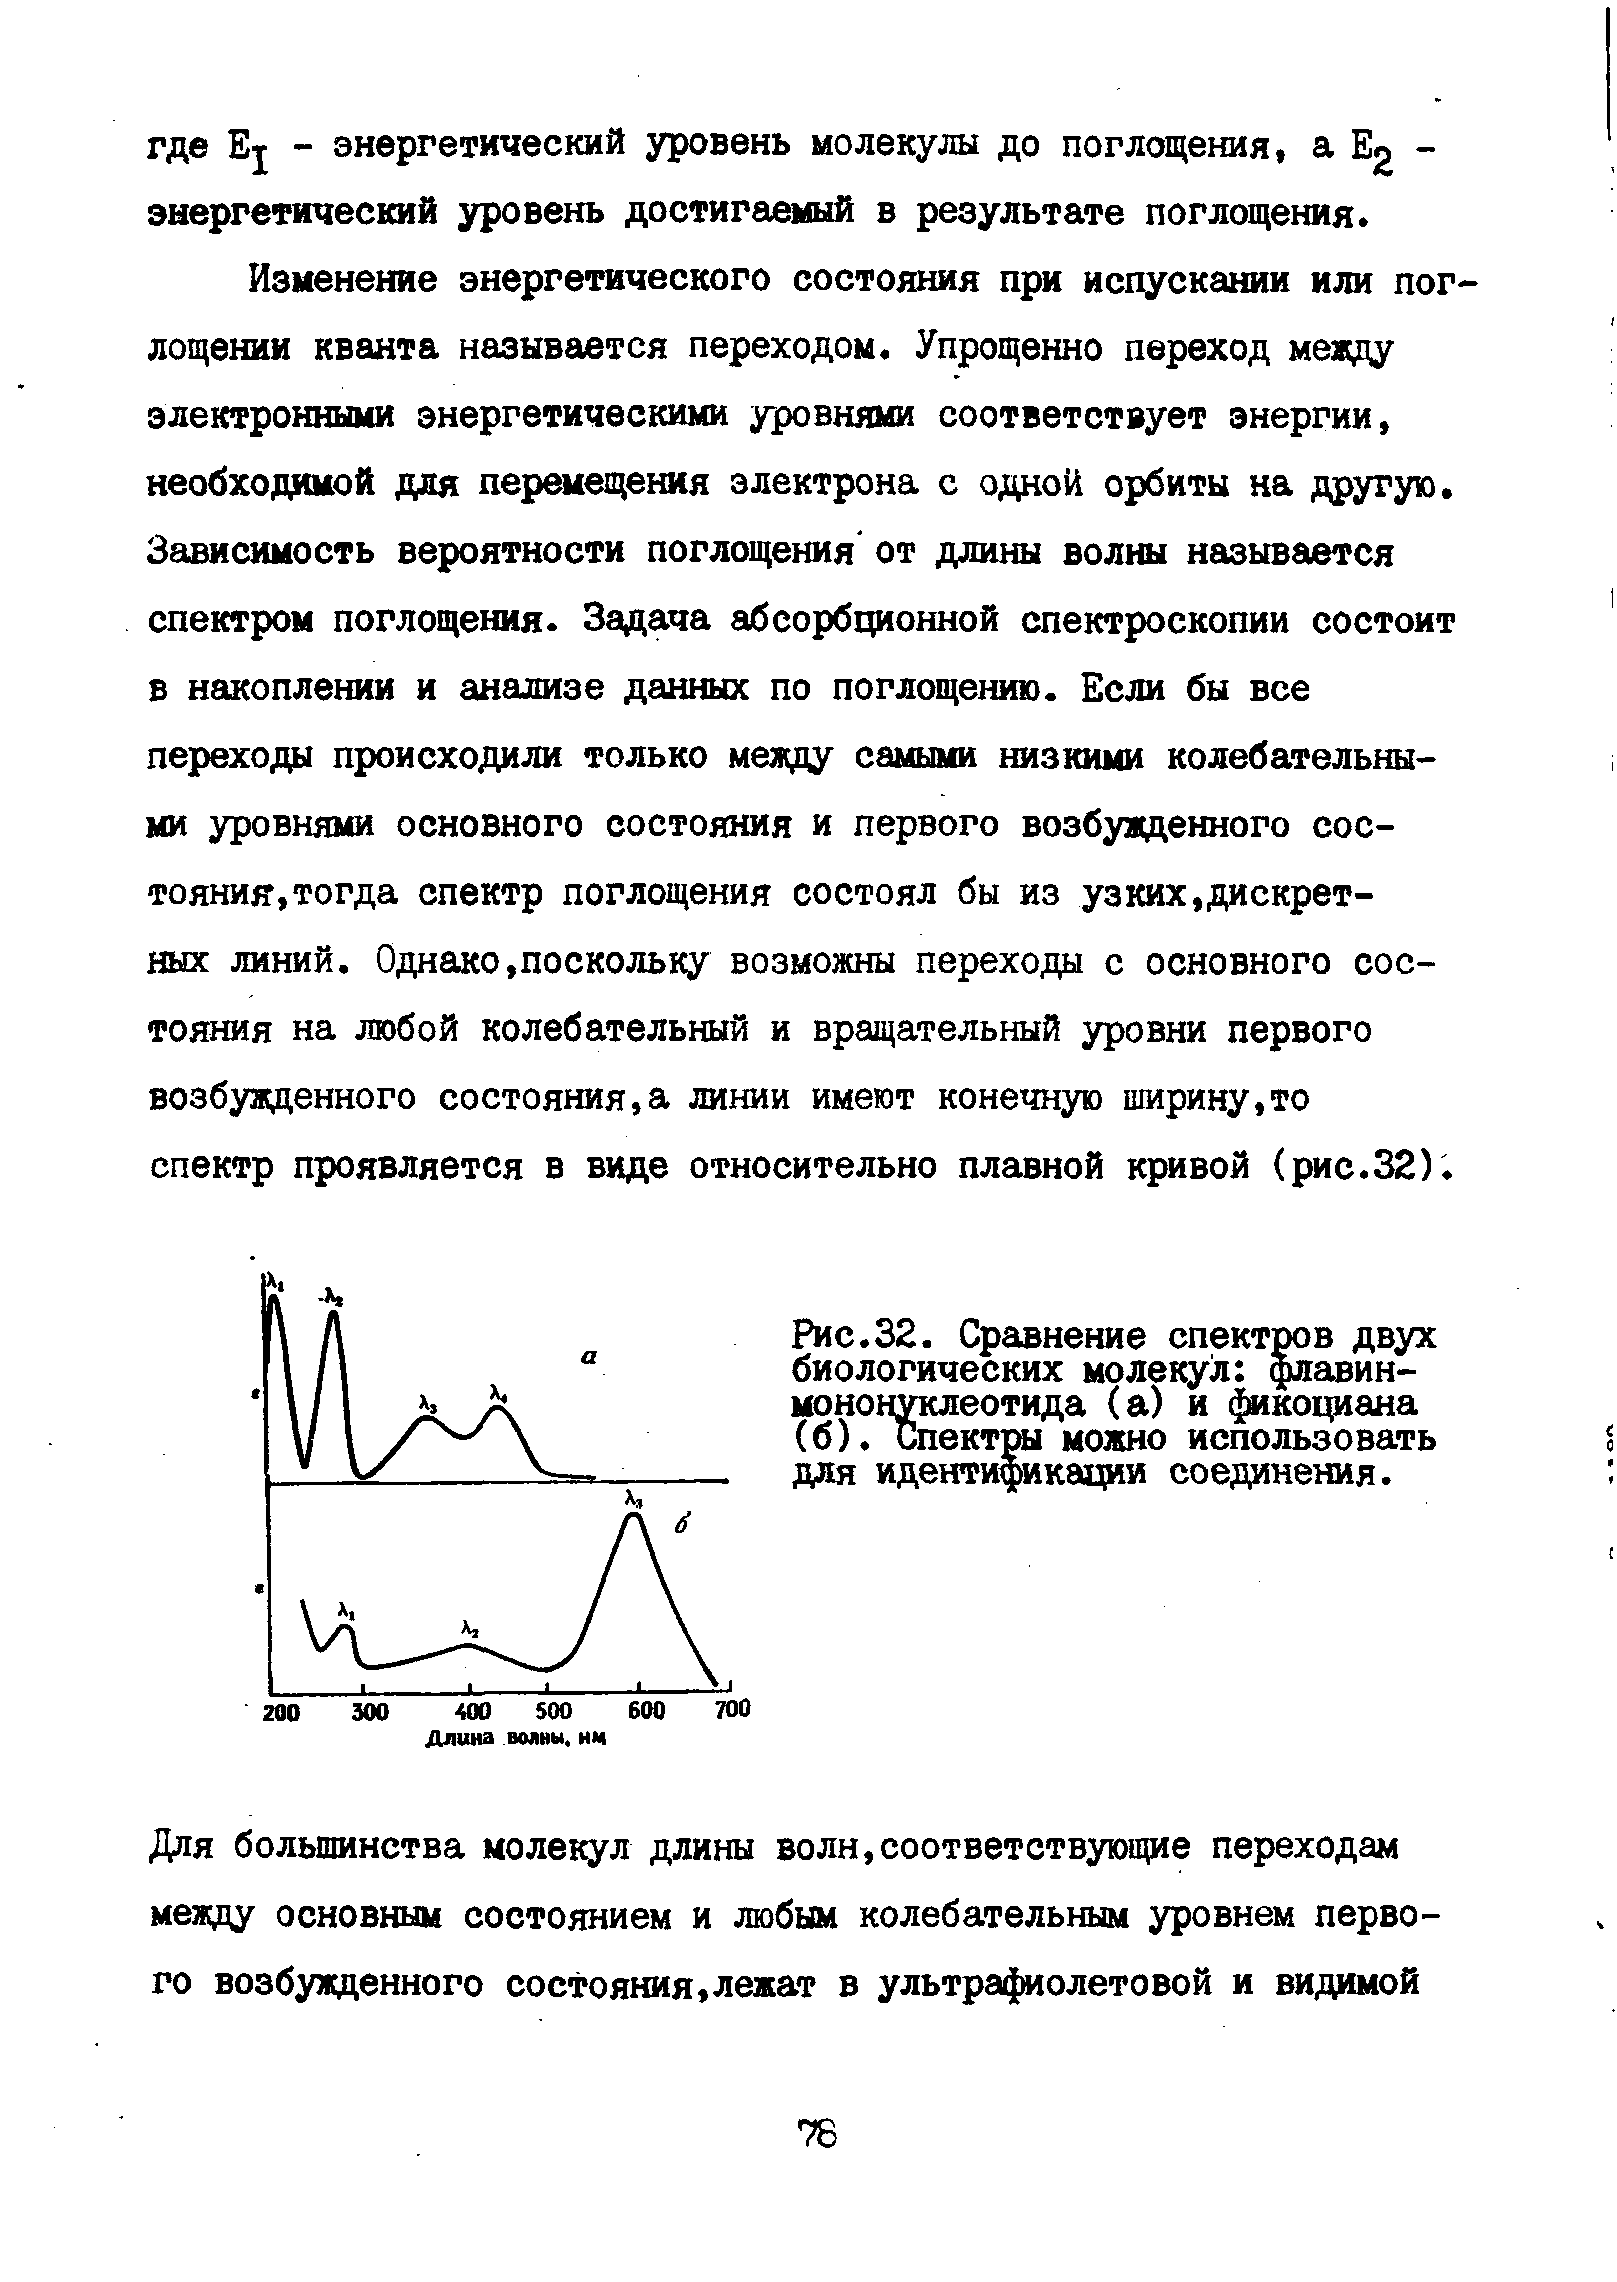 Рис.32. Сравнение спектров двух биологических молекул флавин-мононуклеотида (а) и фикоциана (б). Спектры можно использовать для идентификации соединения.